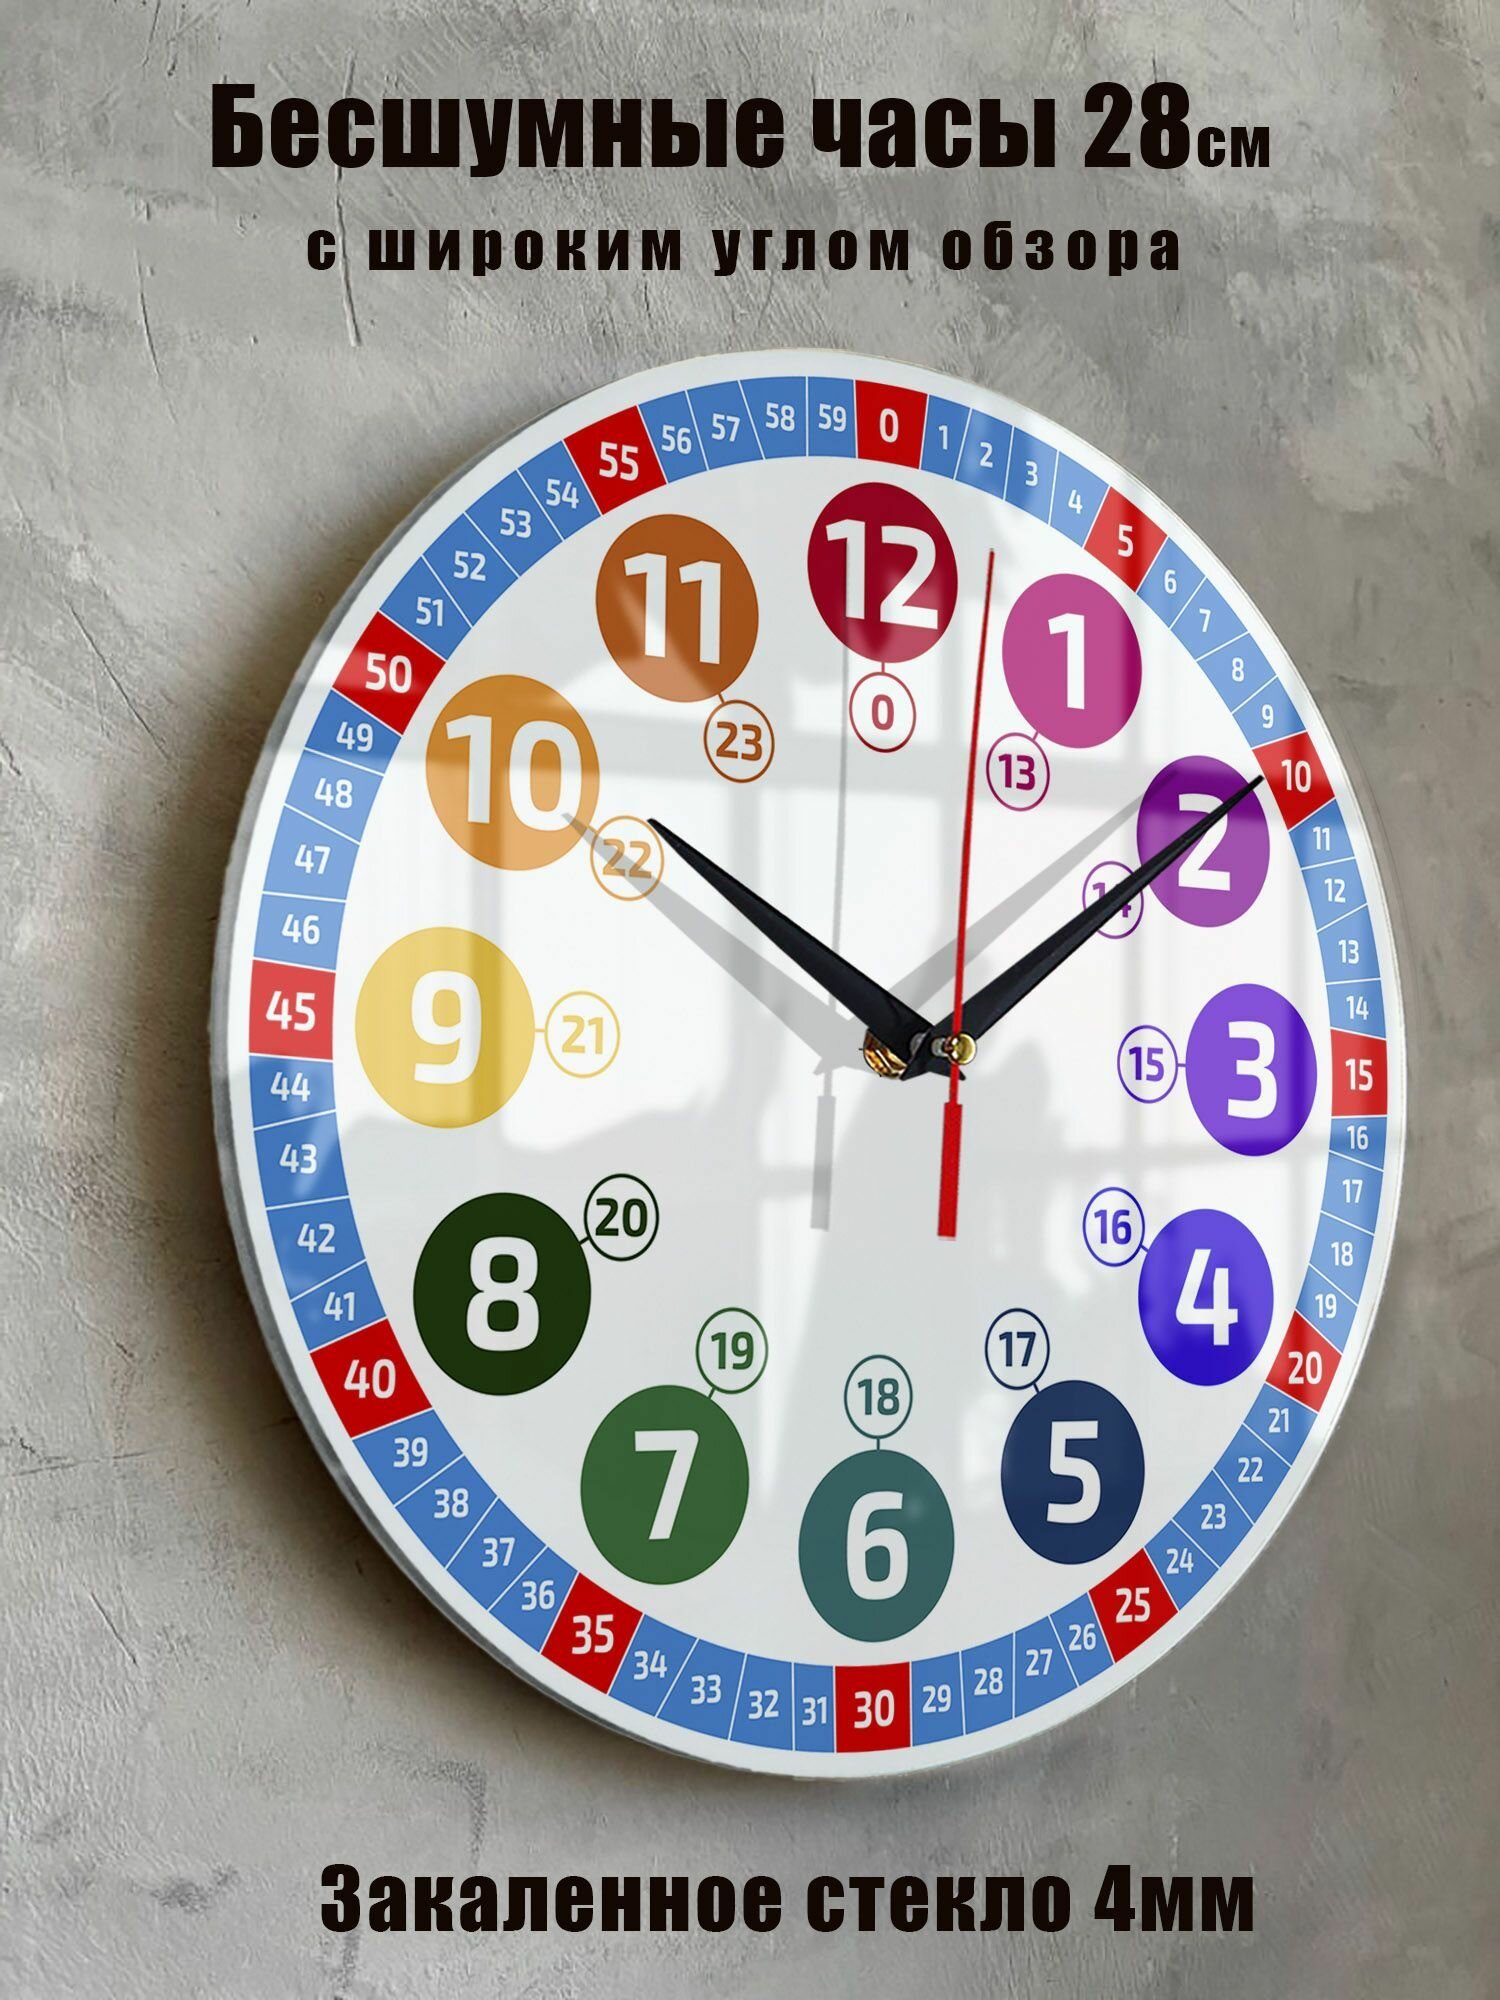 Часы настенные детские "Учим время" бесшумные большие на кухню на стену диаметр 28 см часы обучающие в детскую комнату часы интерьерные настенные часы настенные